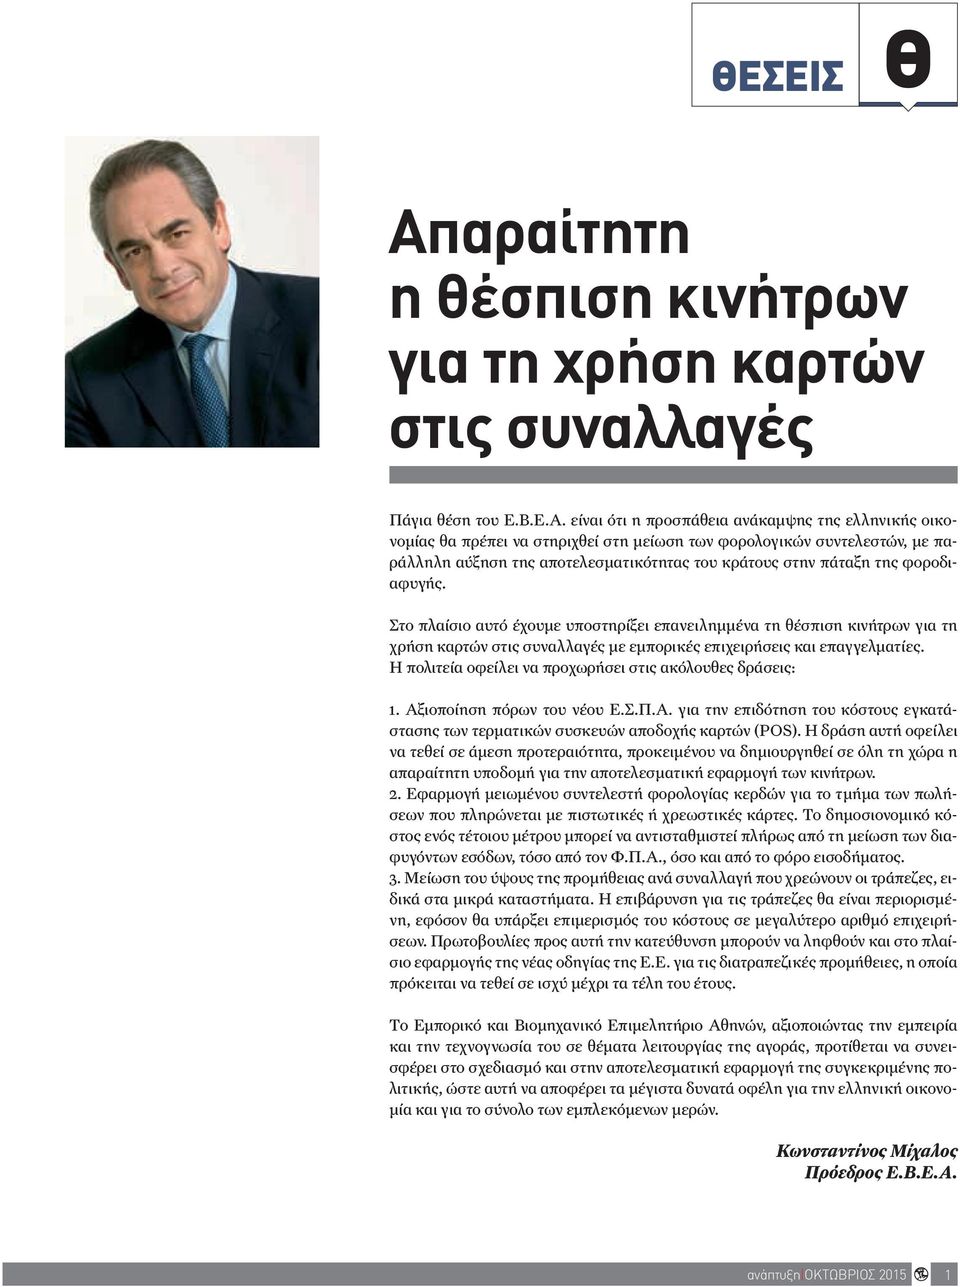 είναι ότι η προσπάθεια ανάκαμψης της ελληνικής οικονομίας θα πρέπει να στηριχθεί στη μείωση των φορολογικών συντελεστών, με παράλληλη αύξηση της αποτελεσματικότητας του κράτους στην πάταξη της